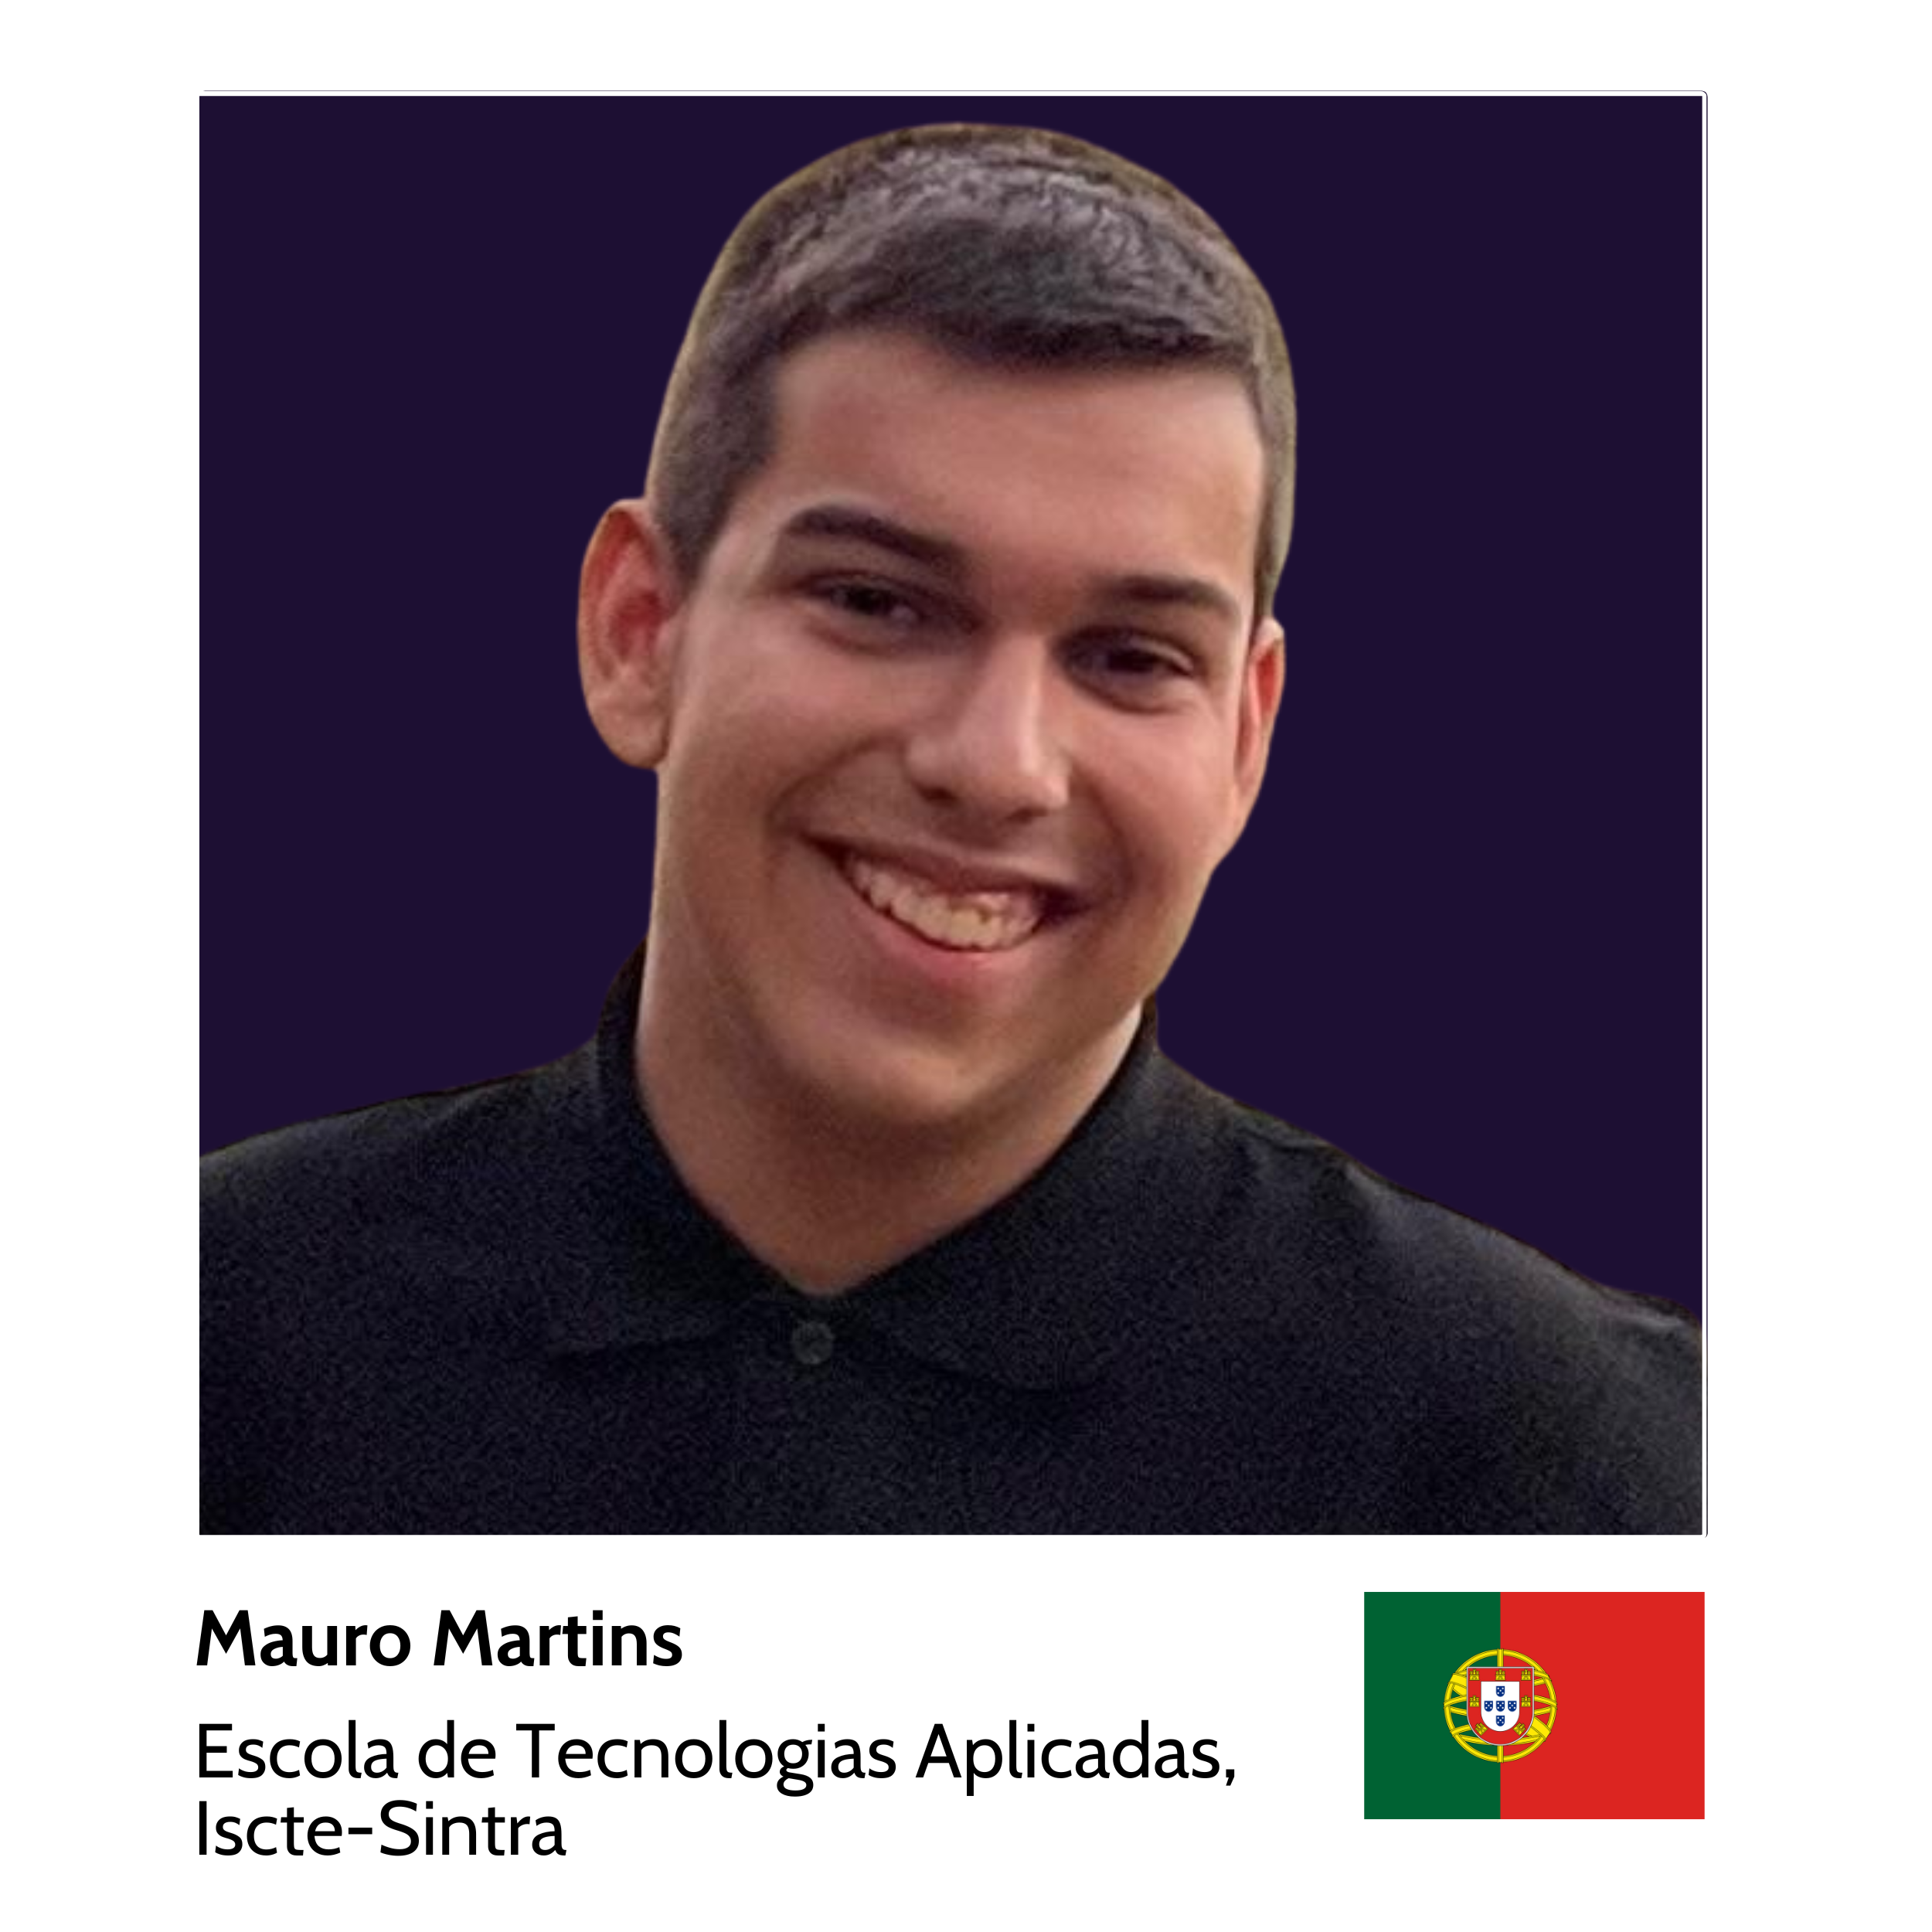 Your_Big_Year_ibm_z_student_ambassador_Mauro_Daniel_Chança_Maçorano_Martins_Escola_de_Tecnologias_Aplicadas,_Iscte-Sintra.png